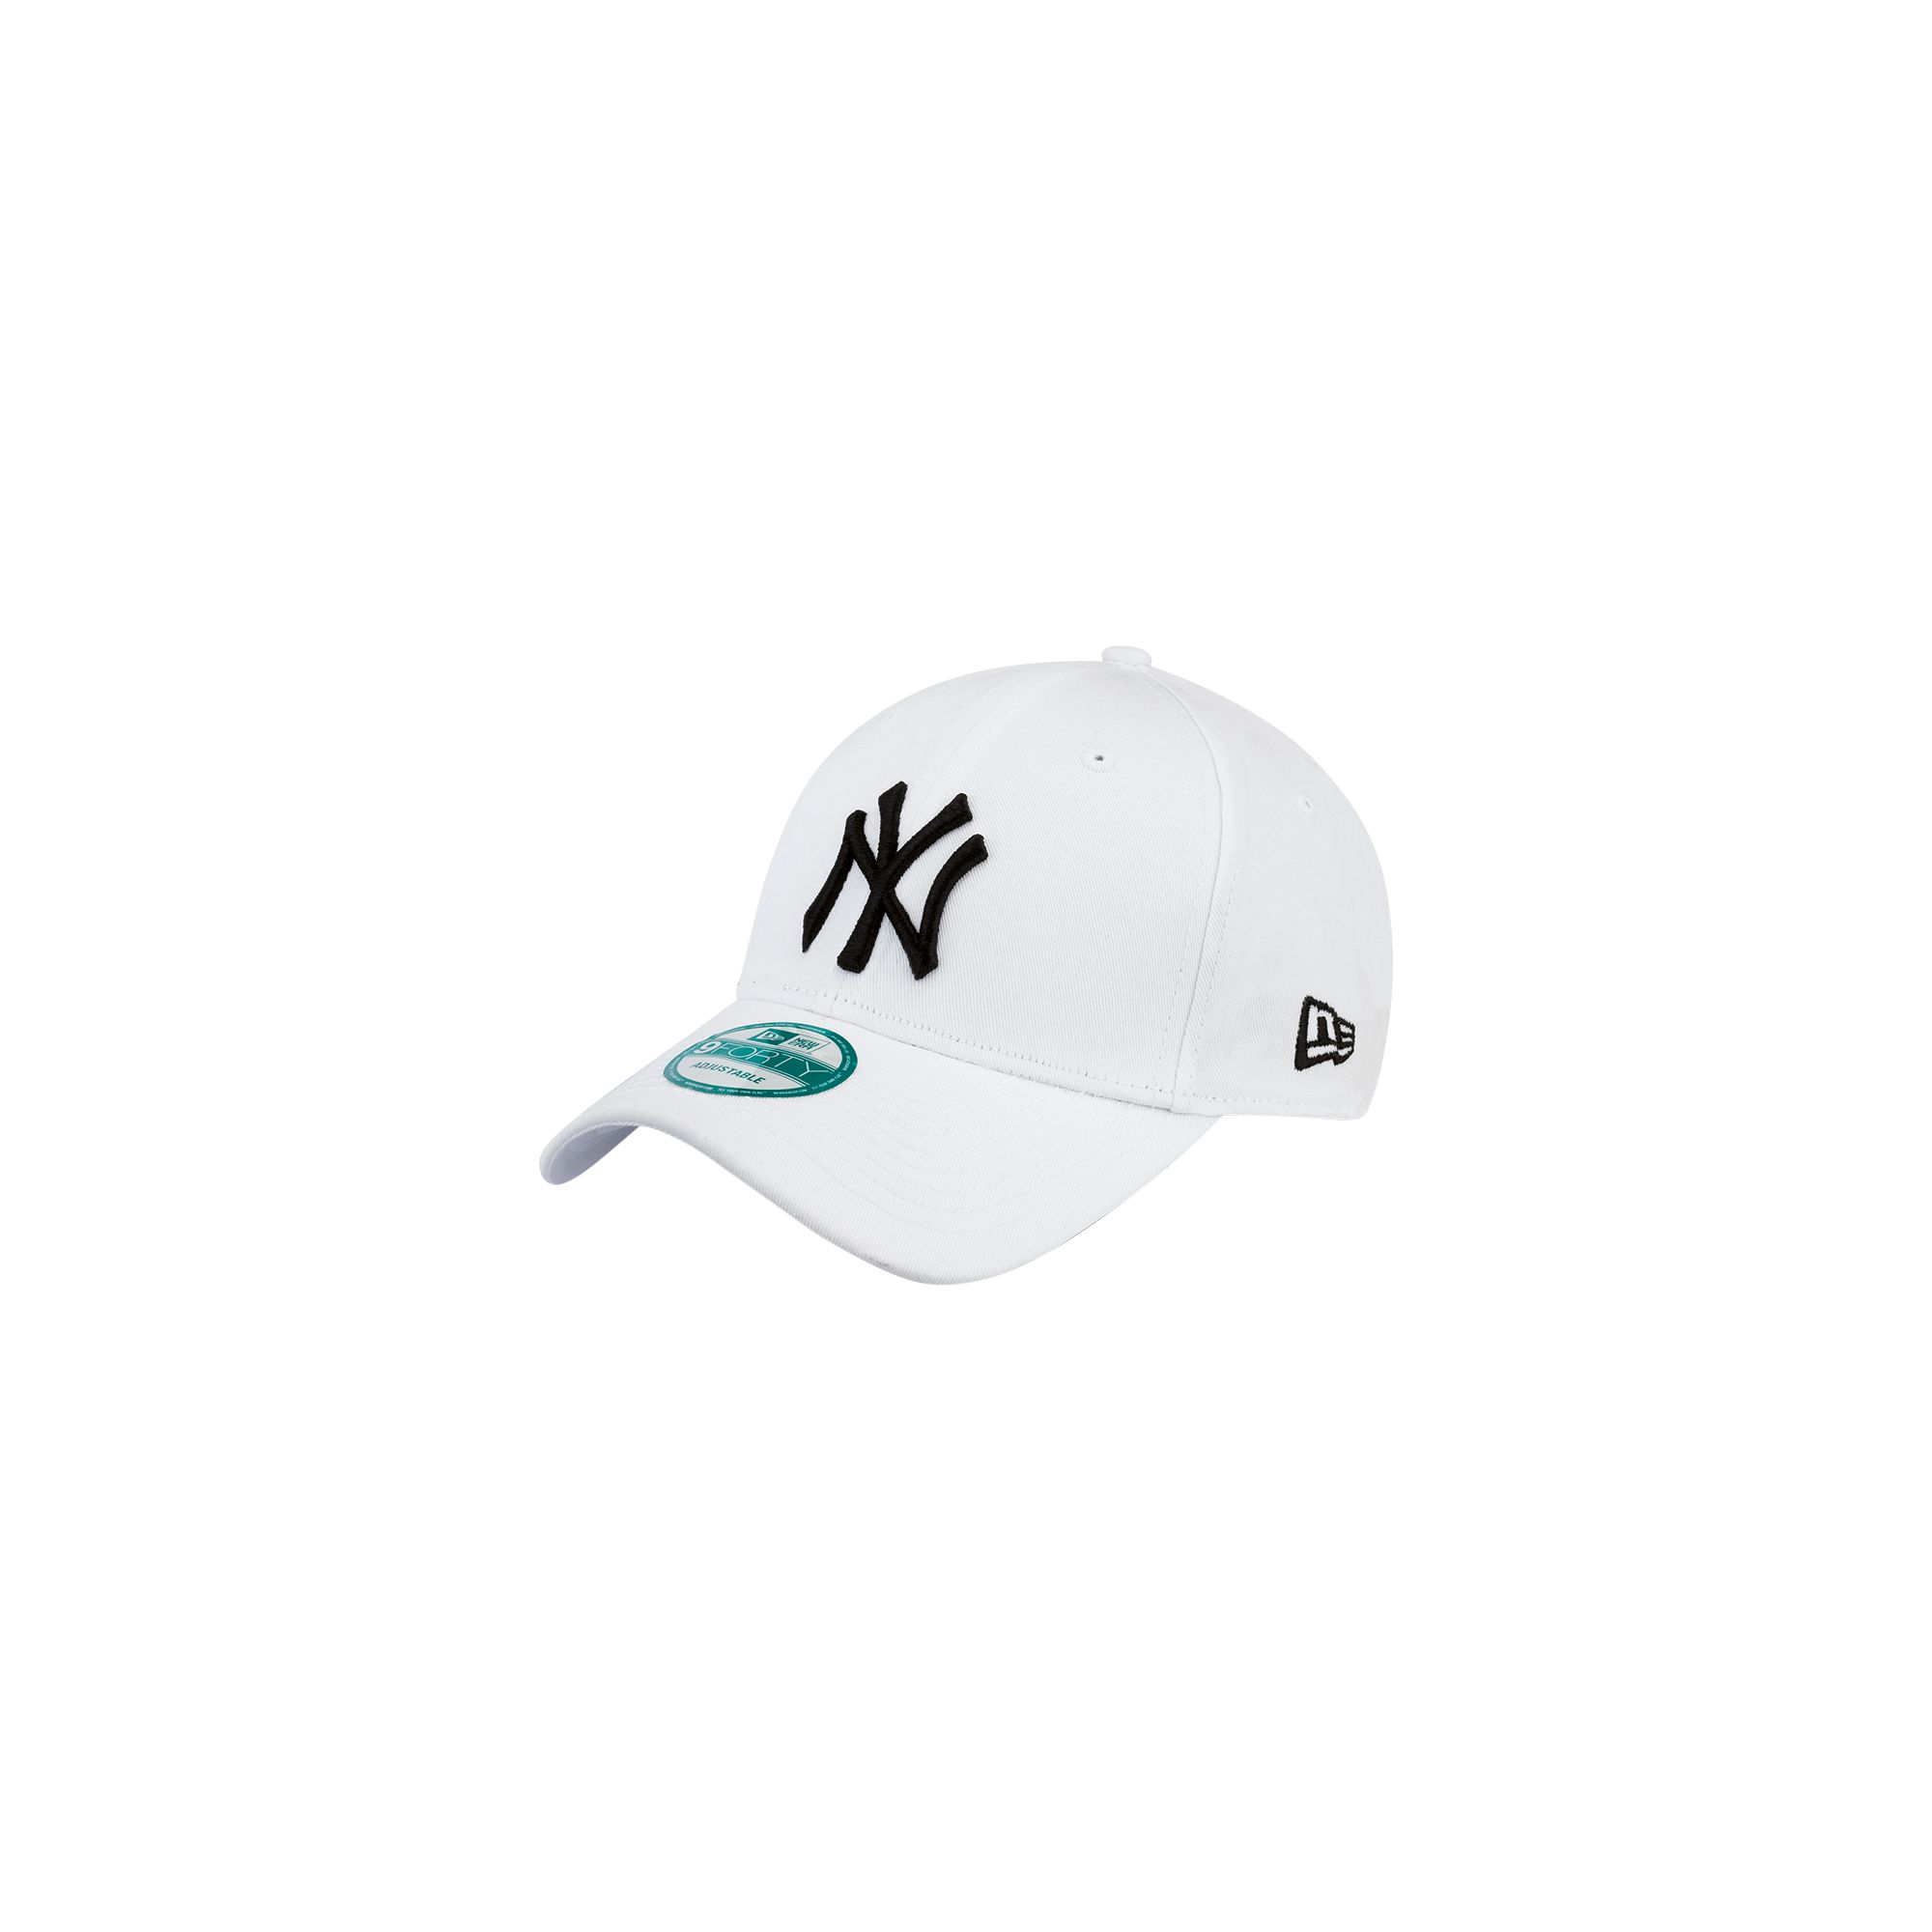 NY Yankees 940 League 940